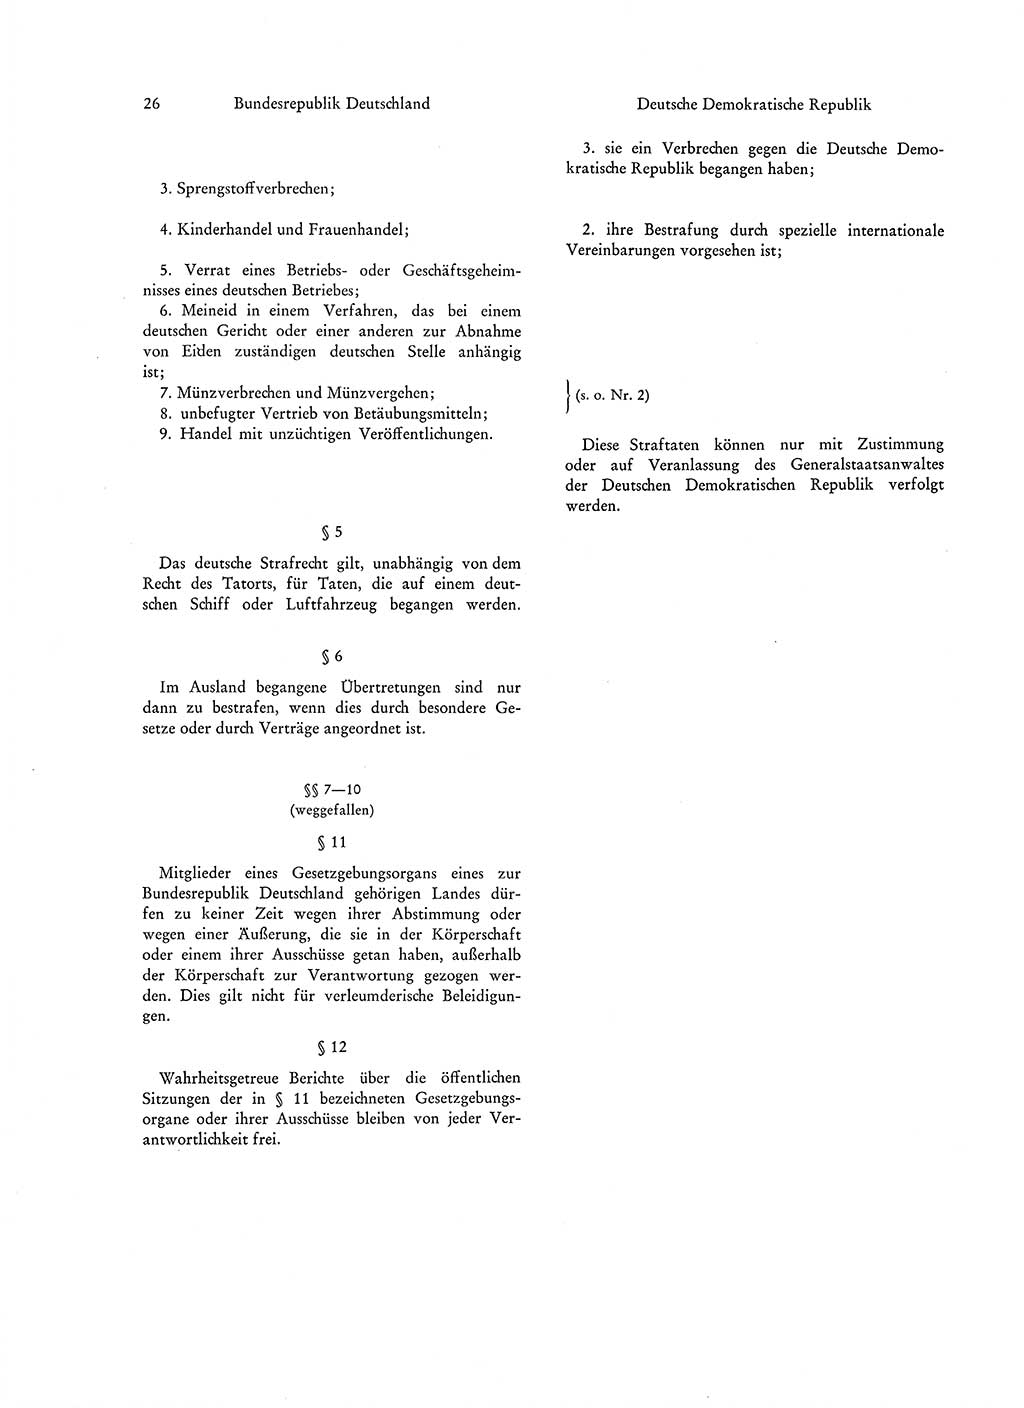 Strafgesetzgebung in Deutschland [Bundesrepublik Deutschland (BRD) und Deutsche Demokratische Republik (DDR)] 1972, Seite 26 (Str.-Ges. Dtl. StGB BRD DDR 1972, S. 26)